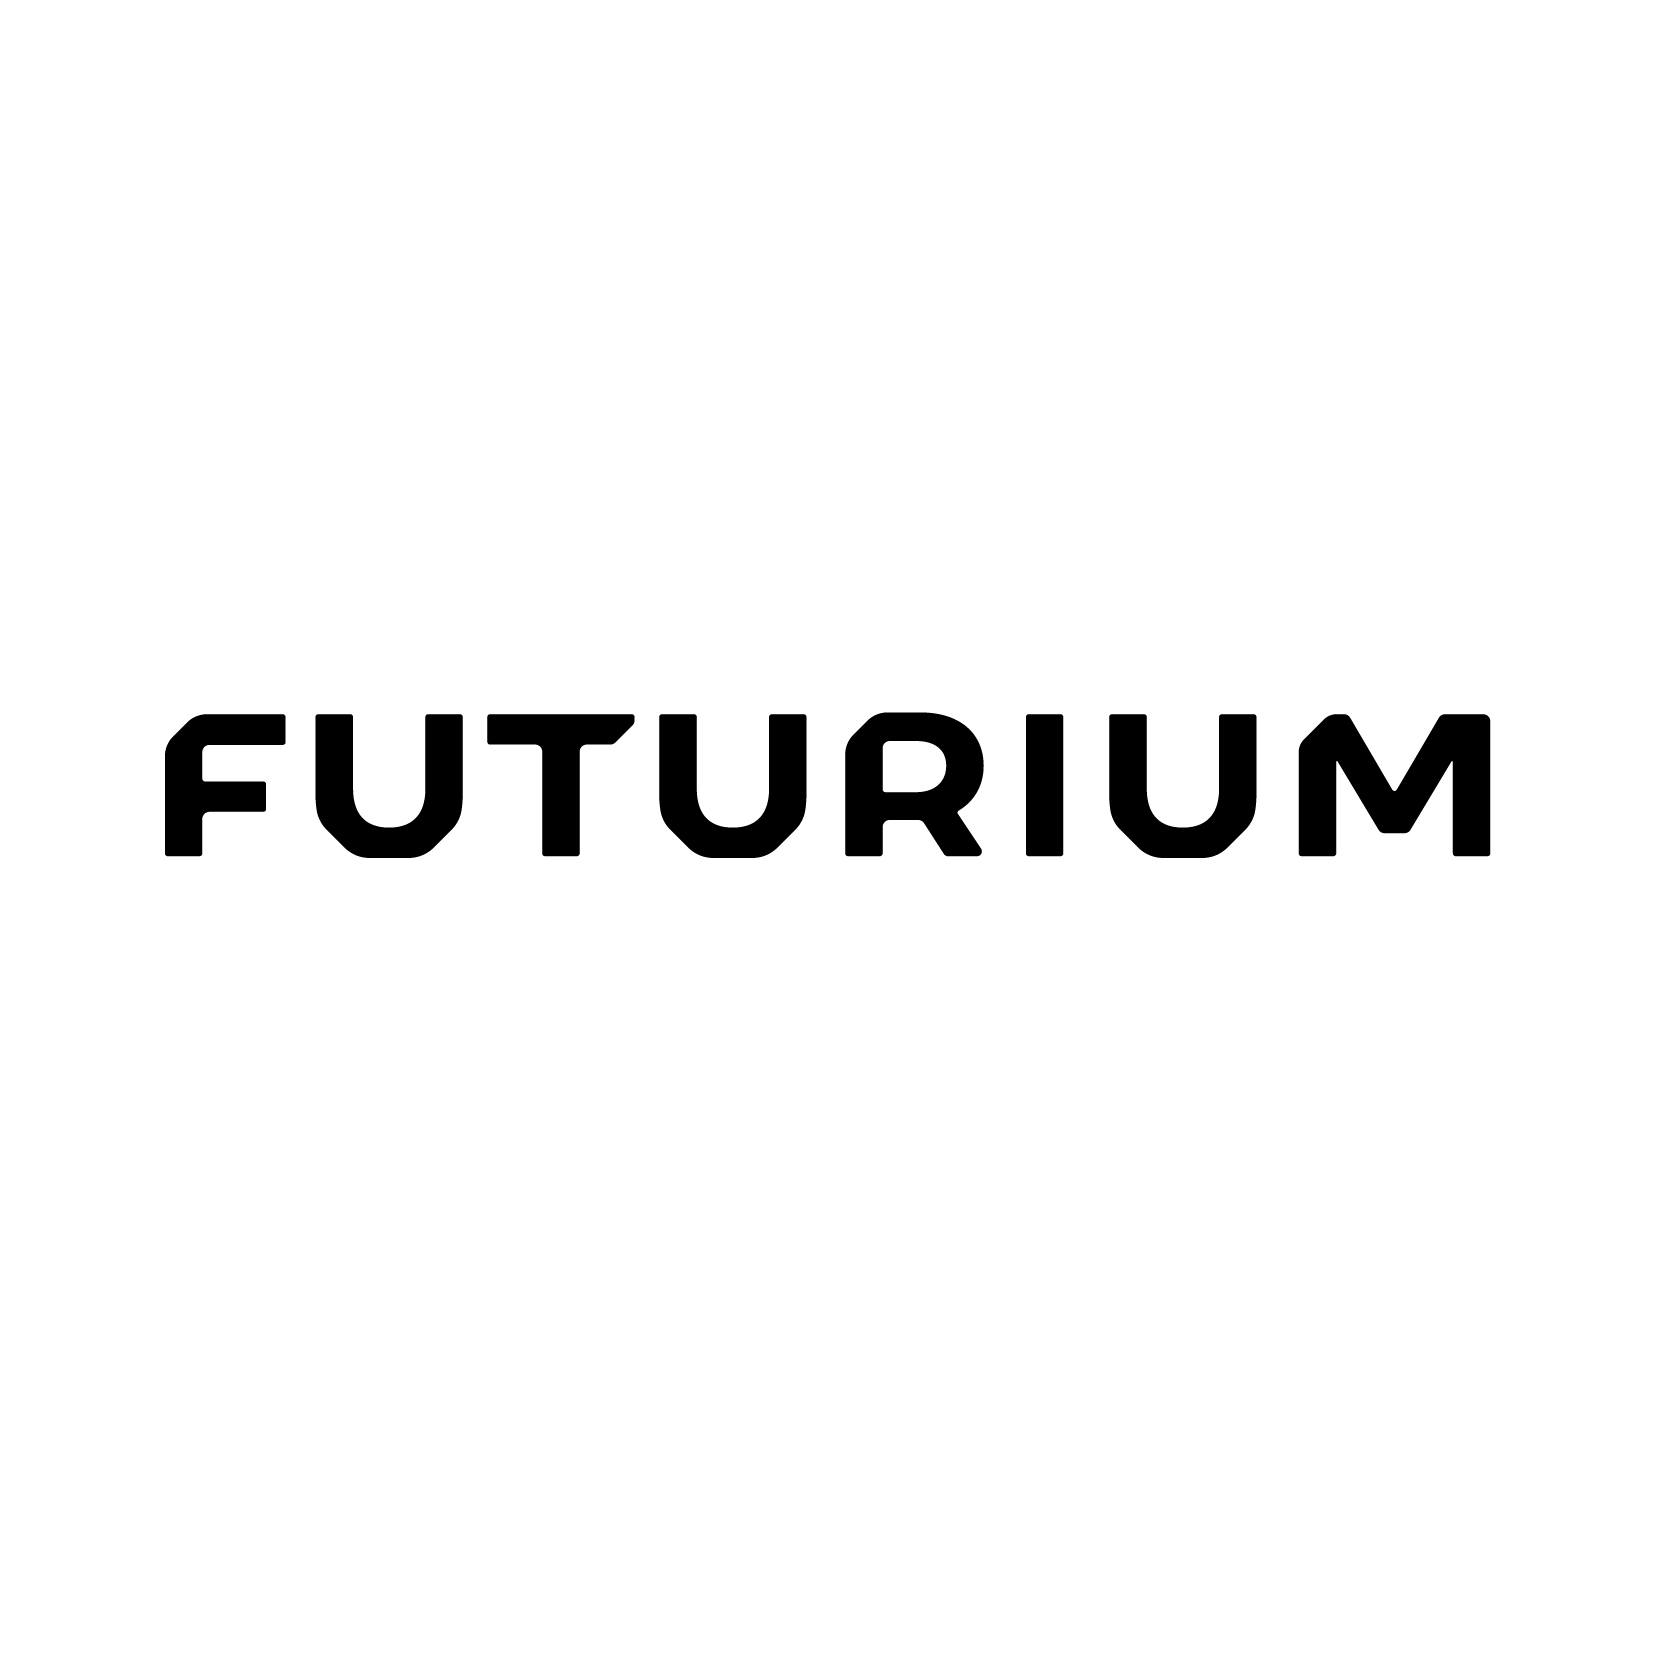 Futurium